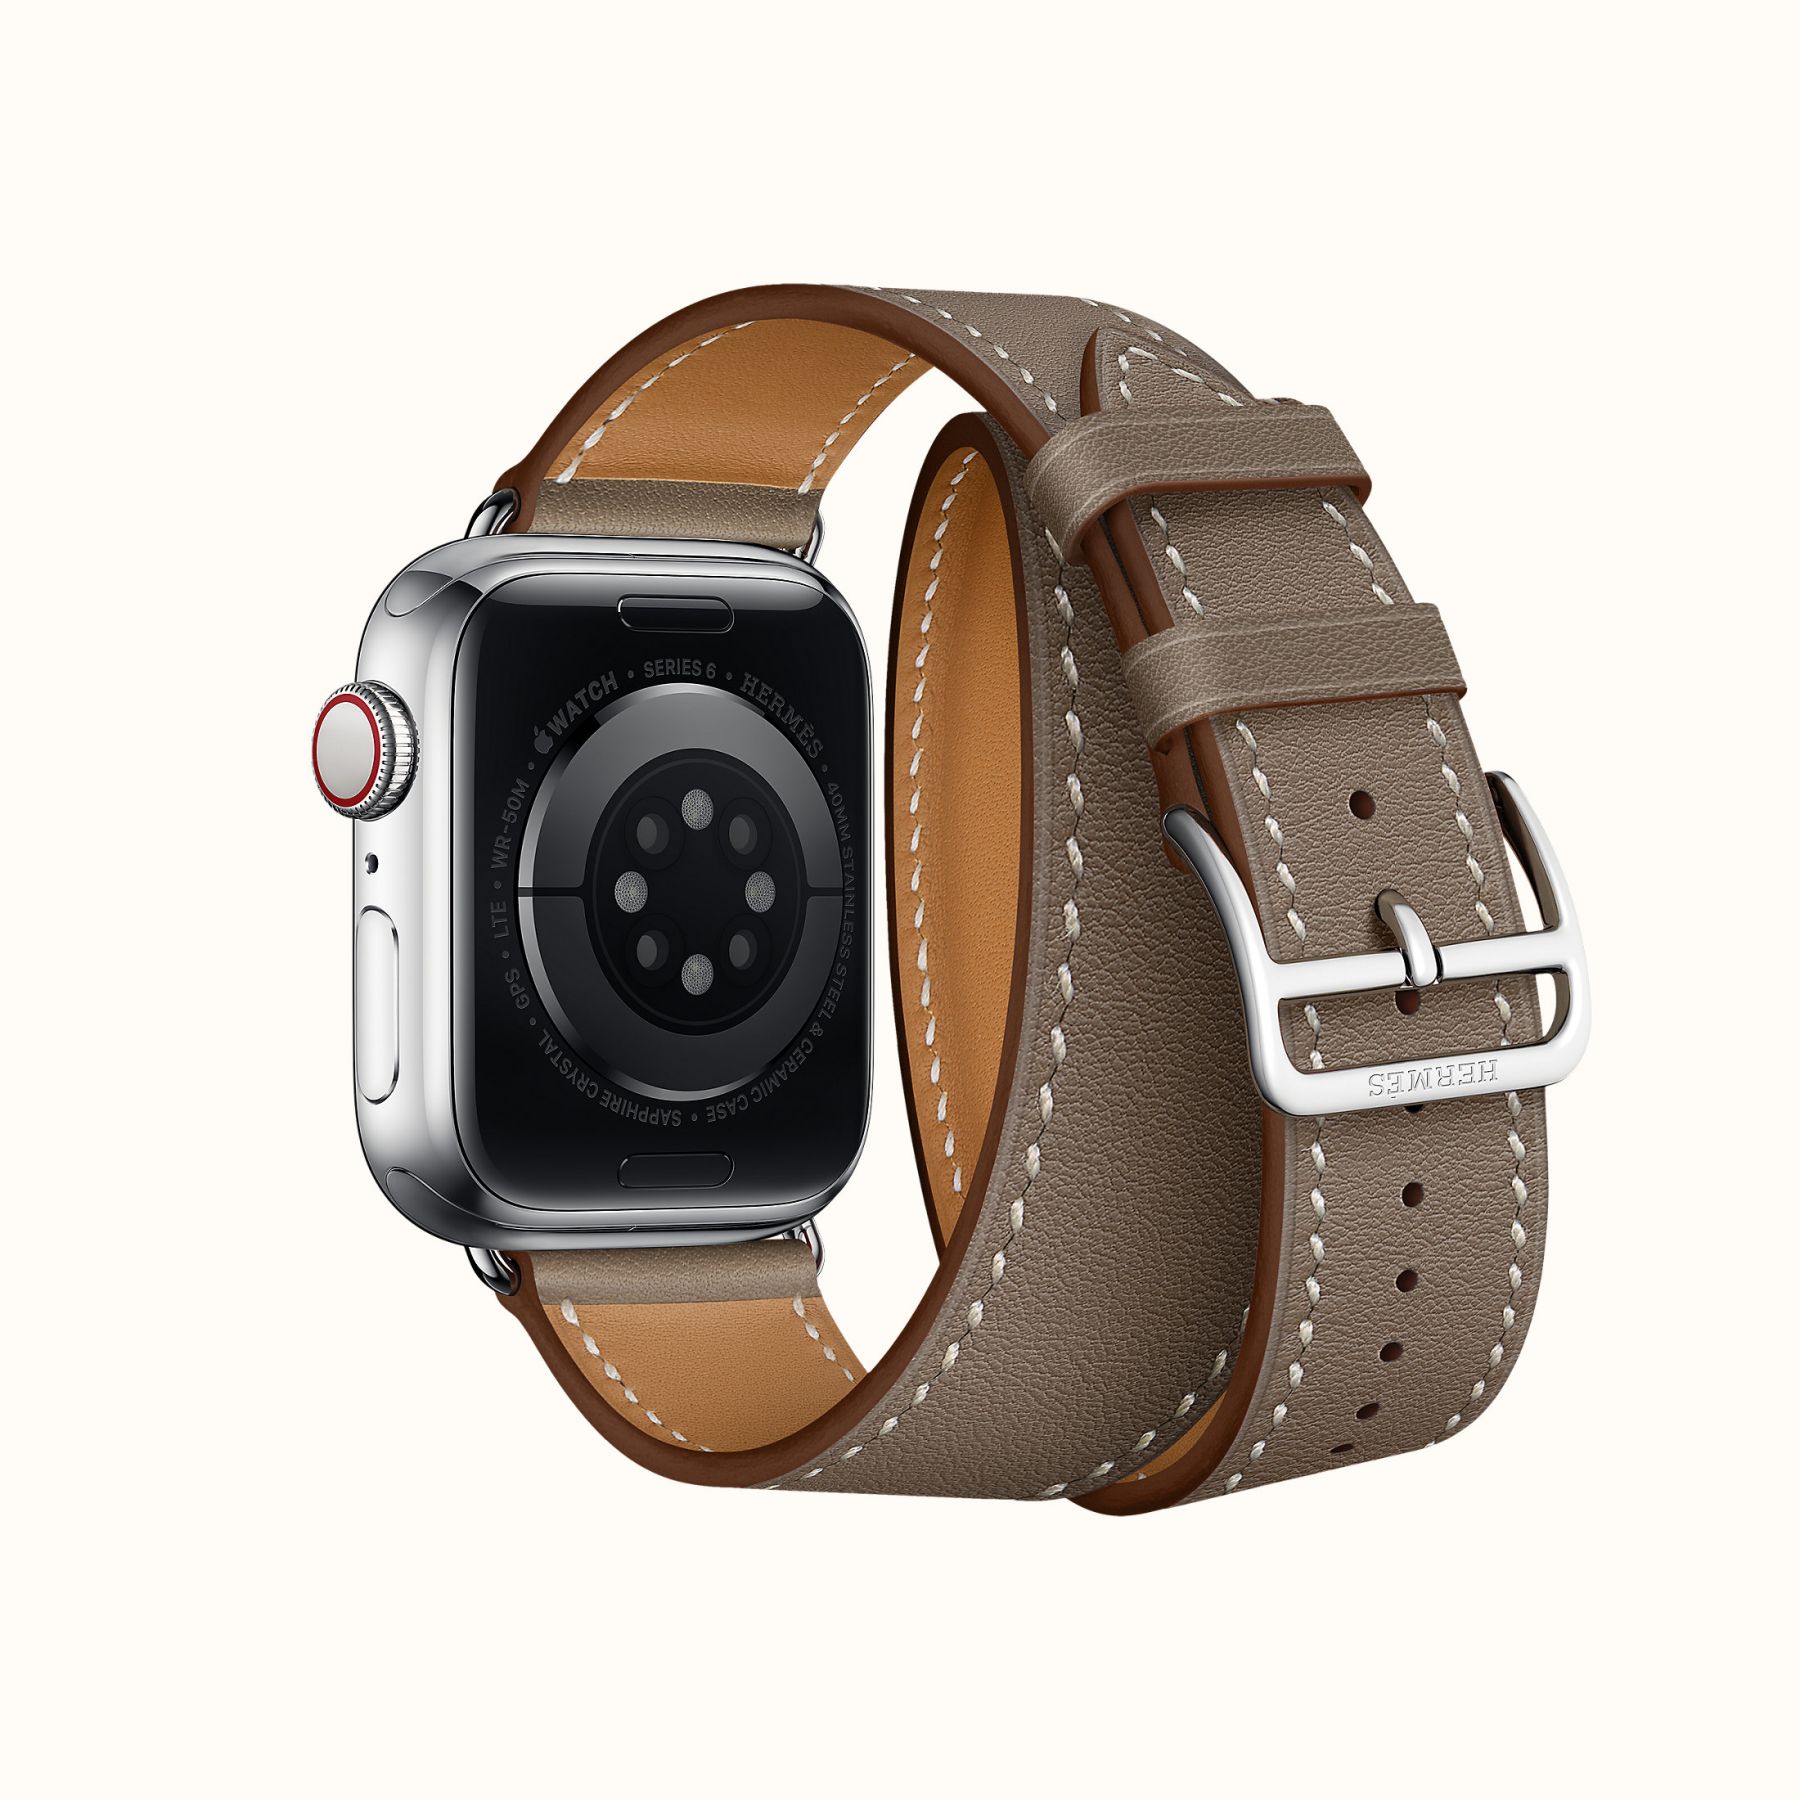 Картинки для часов apple iwatch